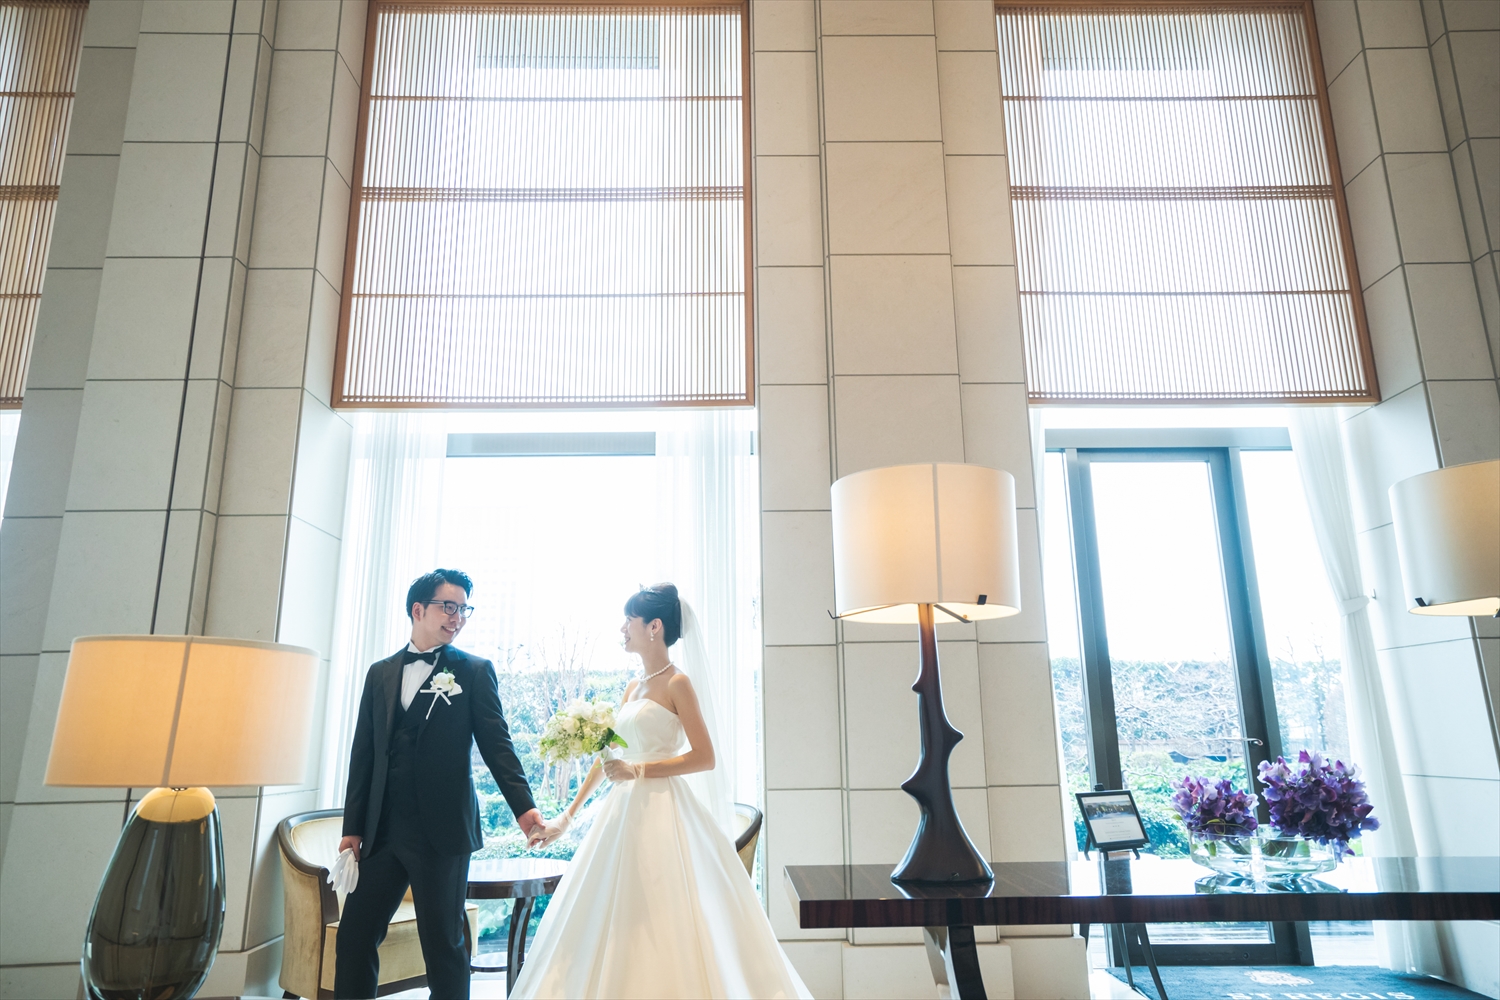 セントレジスホテル大阪での結婚式写真 結婚式ビデオ撮影 写真撮影なら月山映像へ 大阪 神戸 京都